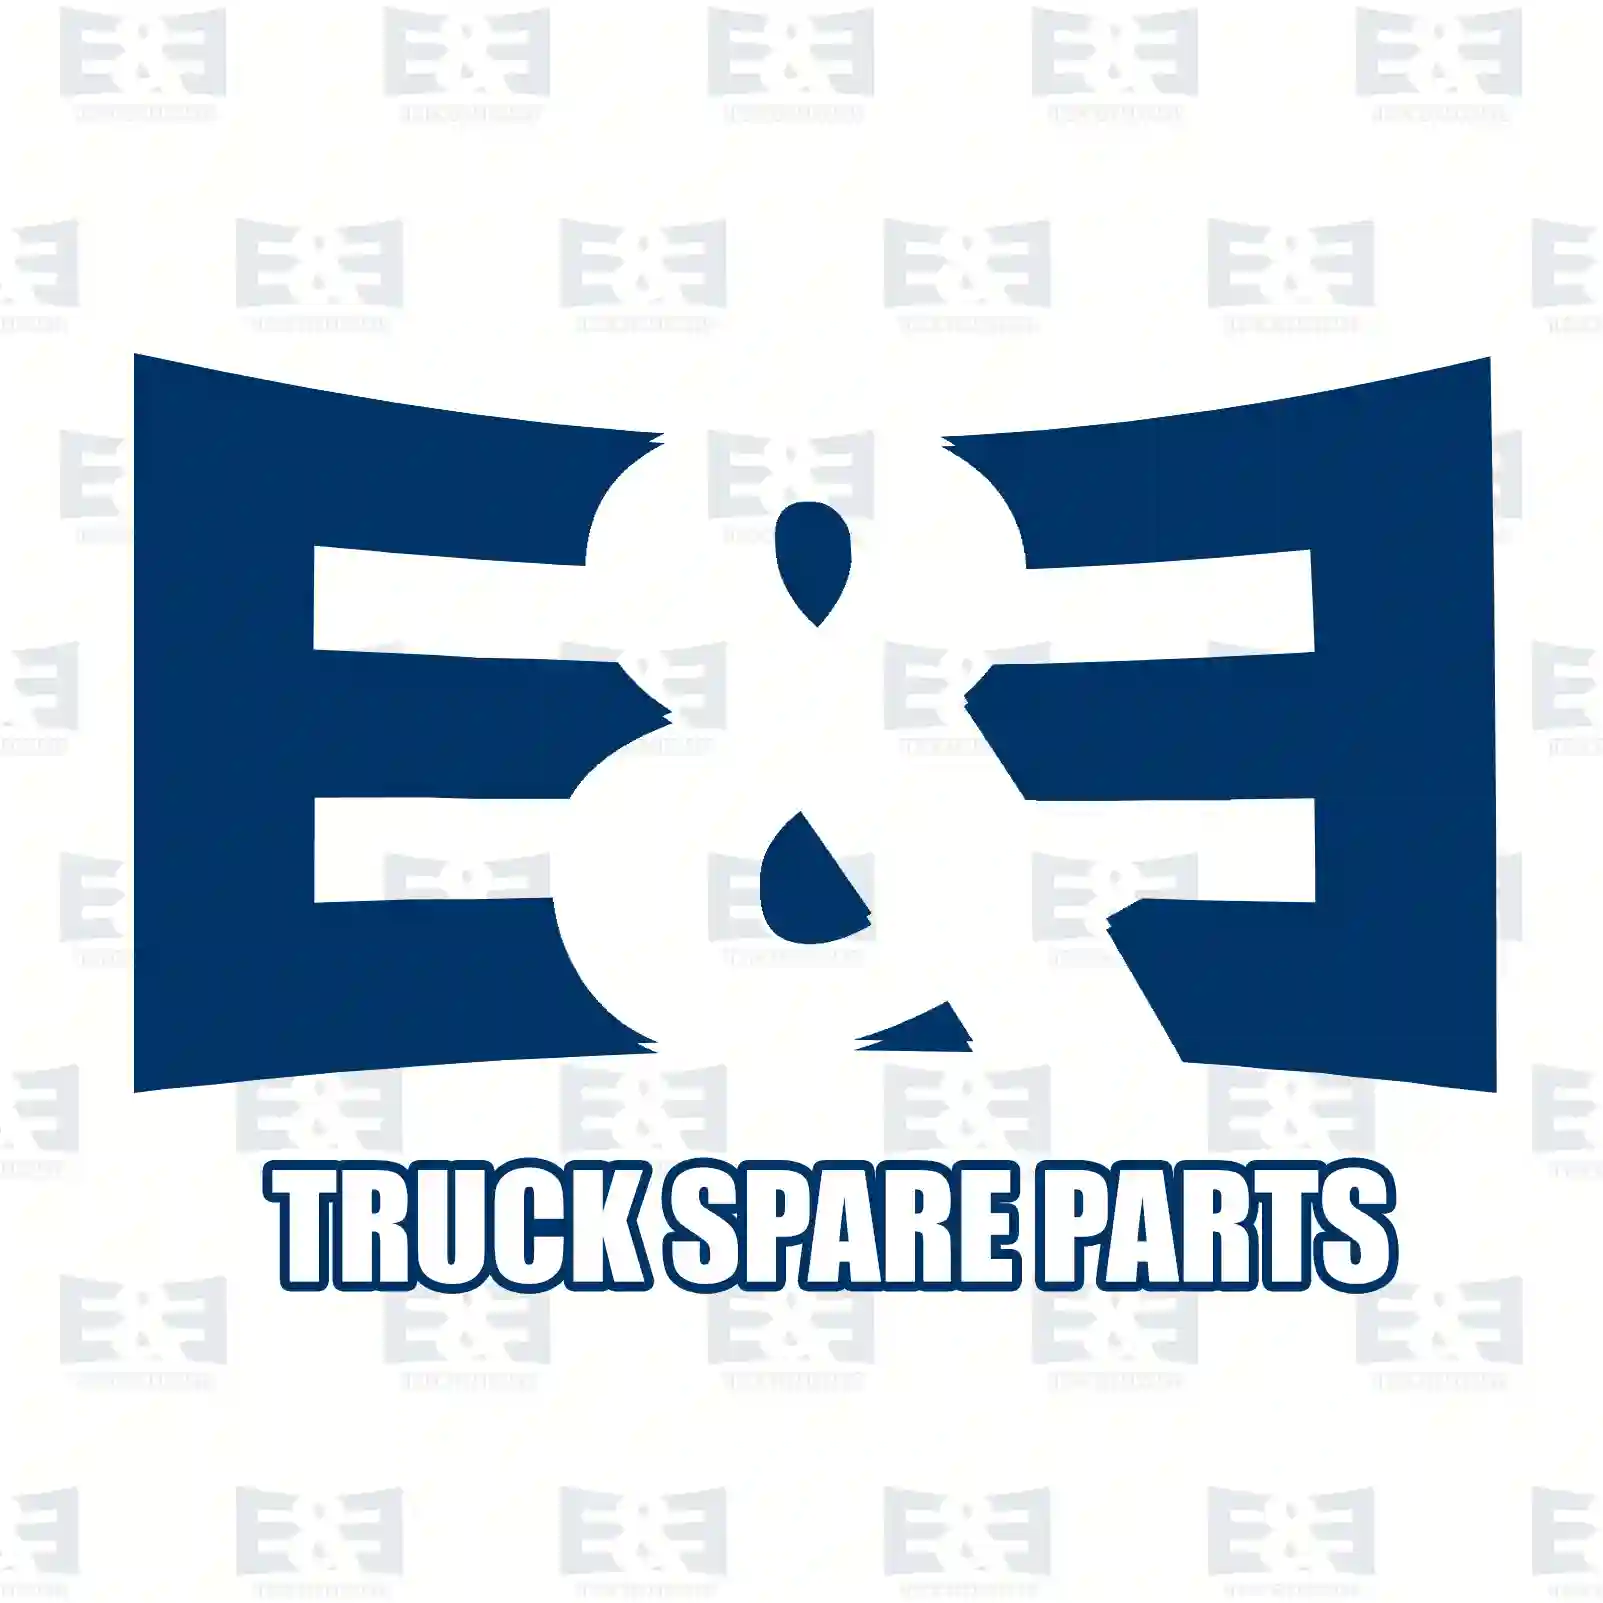 Drive shaft, left, 2E2279894, 7420836831, 20836 ||  2E2279894 E&E Truck Spare Parts | Truck Spare Parts, Auotomotive Spare Parts Drive shaft, left, 2E2279894, 7420836831, 20836 ||  2E2279894 E&E Truck Spare Parts | Truck Spare Parts, Auotomotive Spare Parts